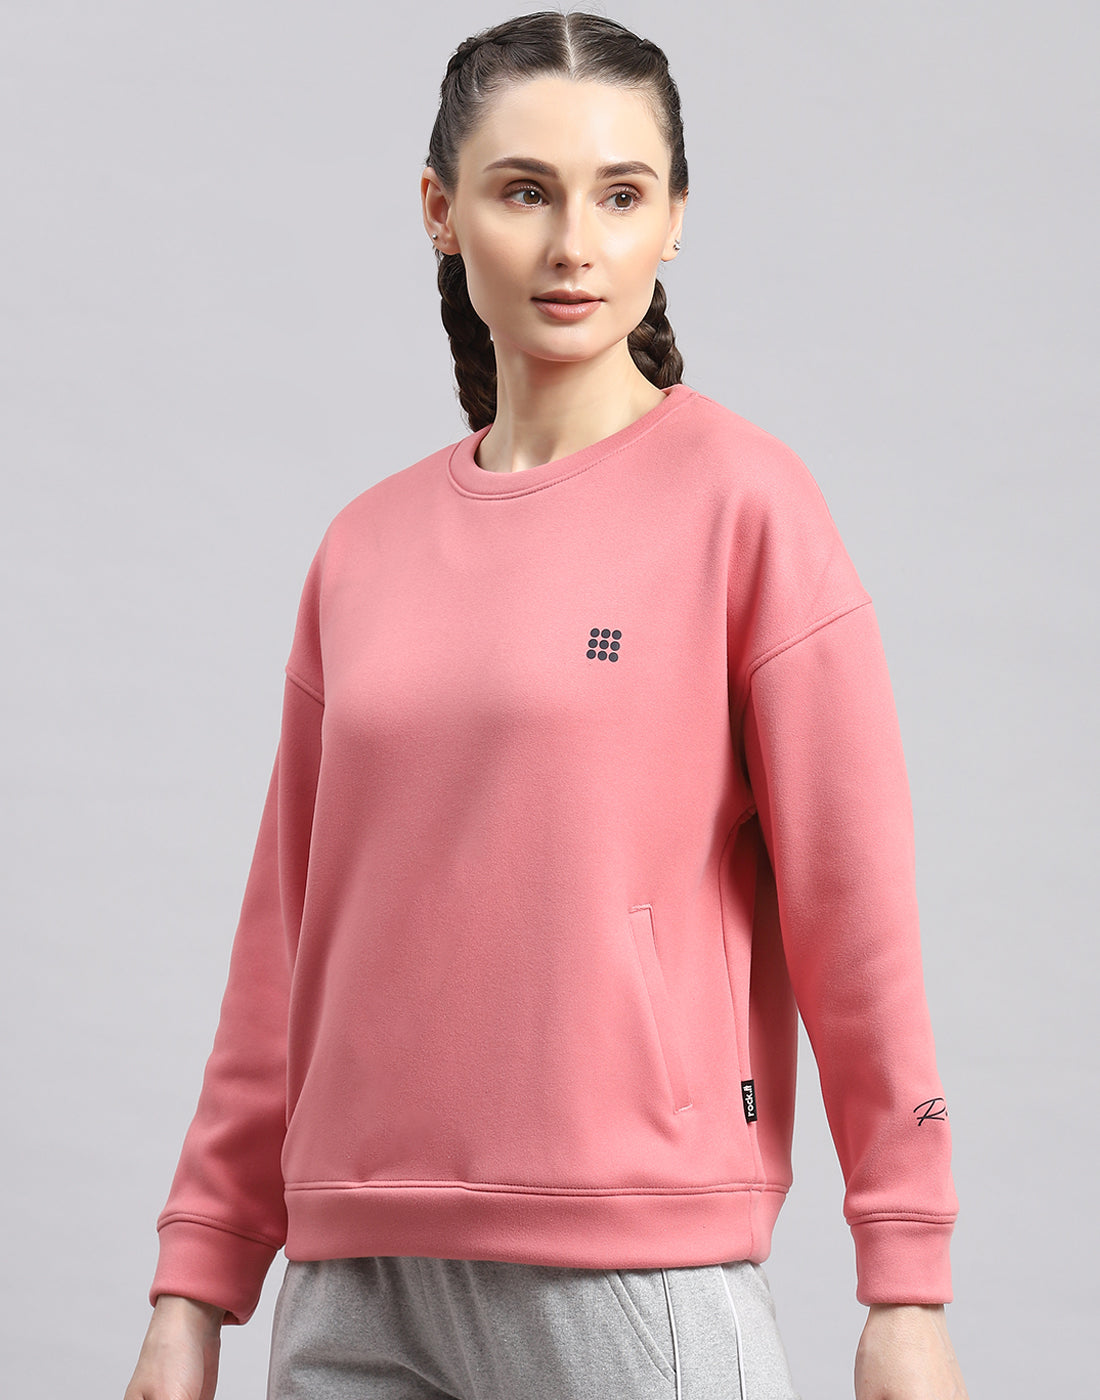 Buy Women Yellow Solid Round Neck Full Sleeve Sweatshirt Online in